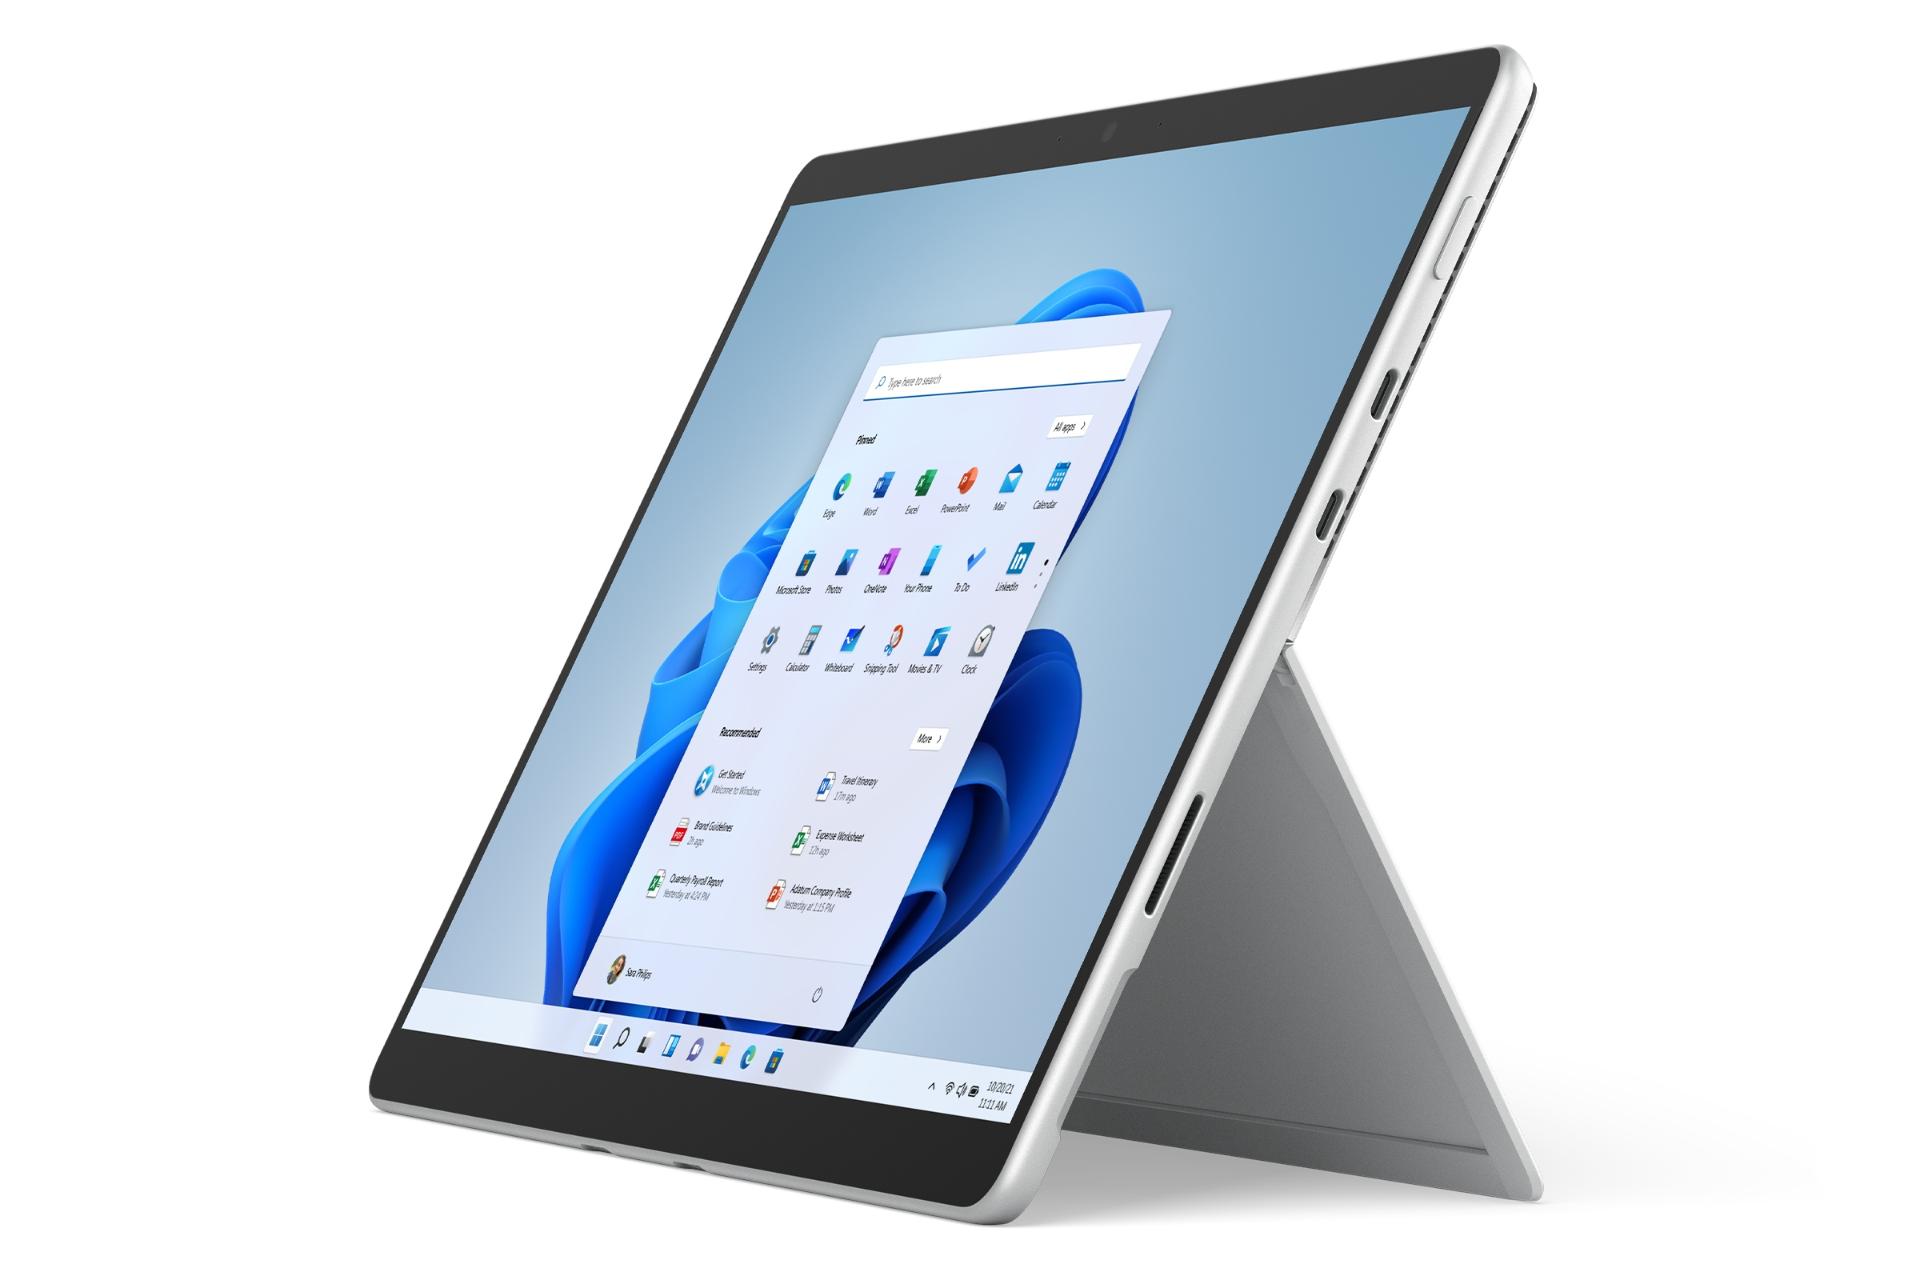 نمای جانبی سرفیس پرو 8 مایکروسافت / Microsoft Surface Pro 8 نقره ای